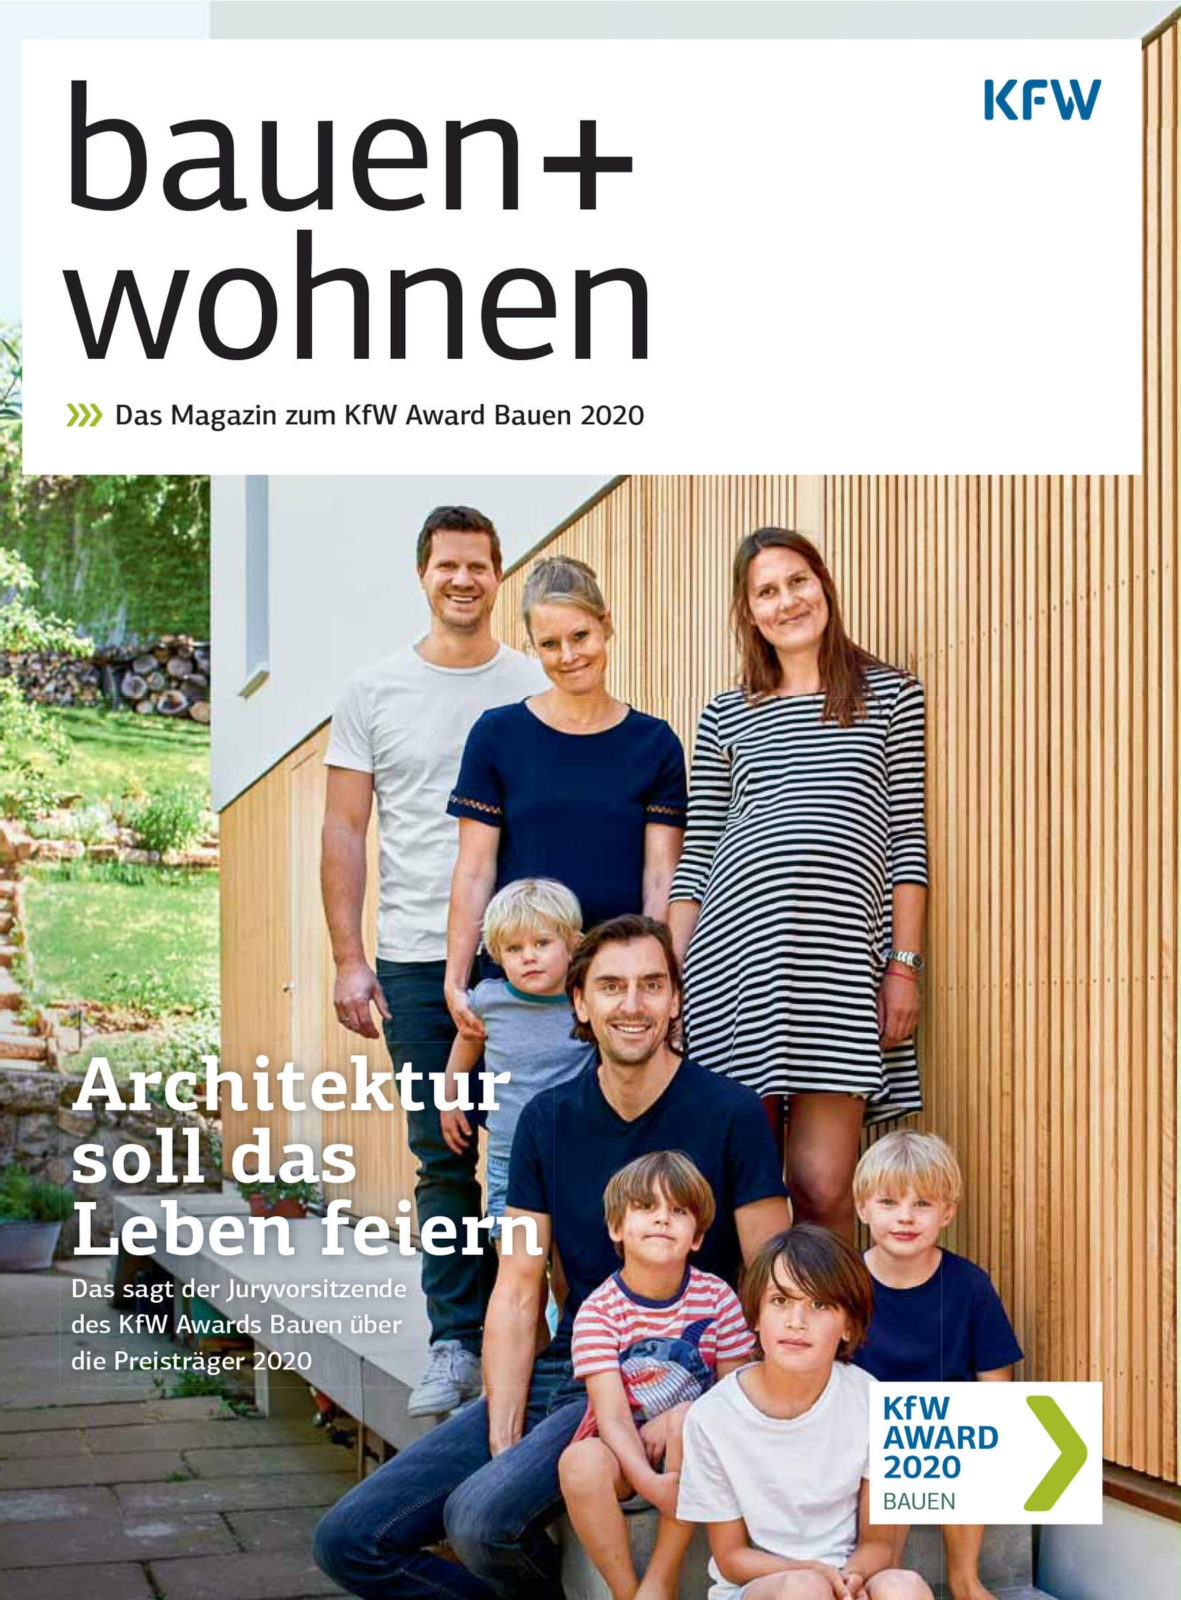 People Portfolio Published Bauen + Wohnen KFW Bank